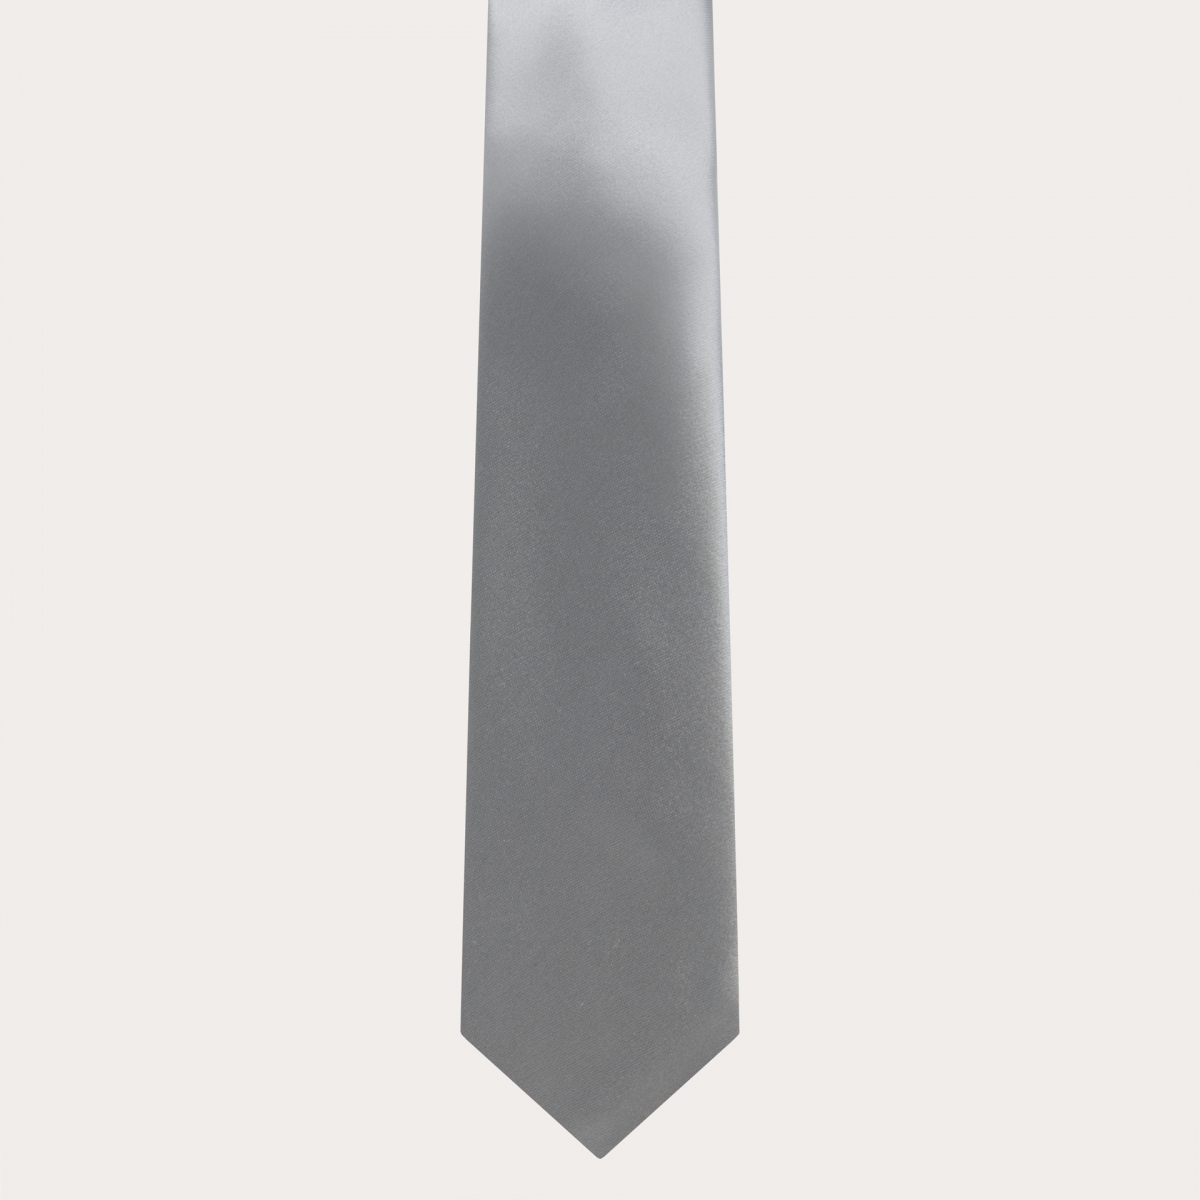 BRUCLE Cravatta classica in raso di seta, grigio